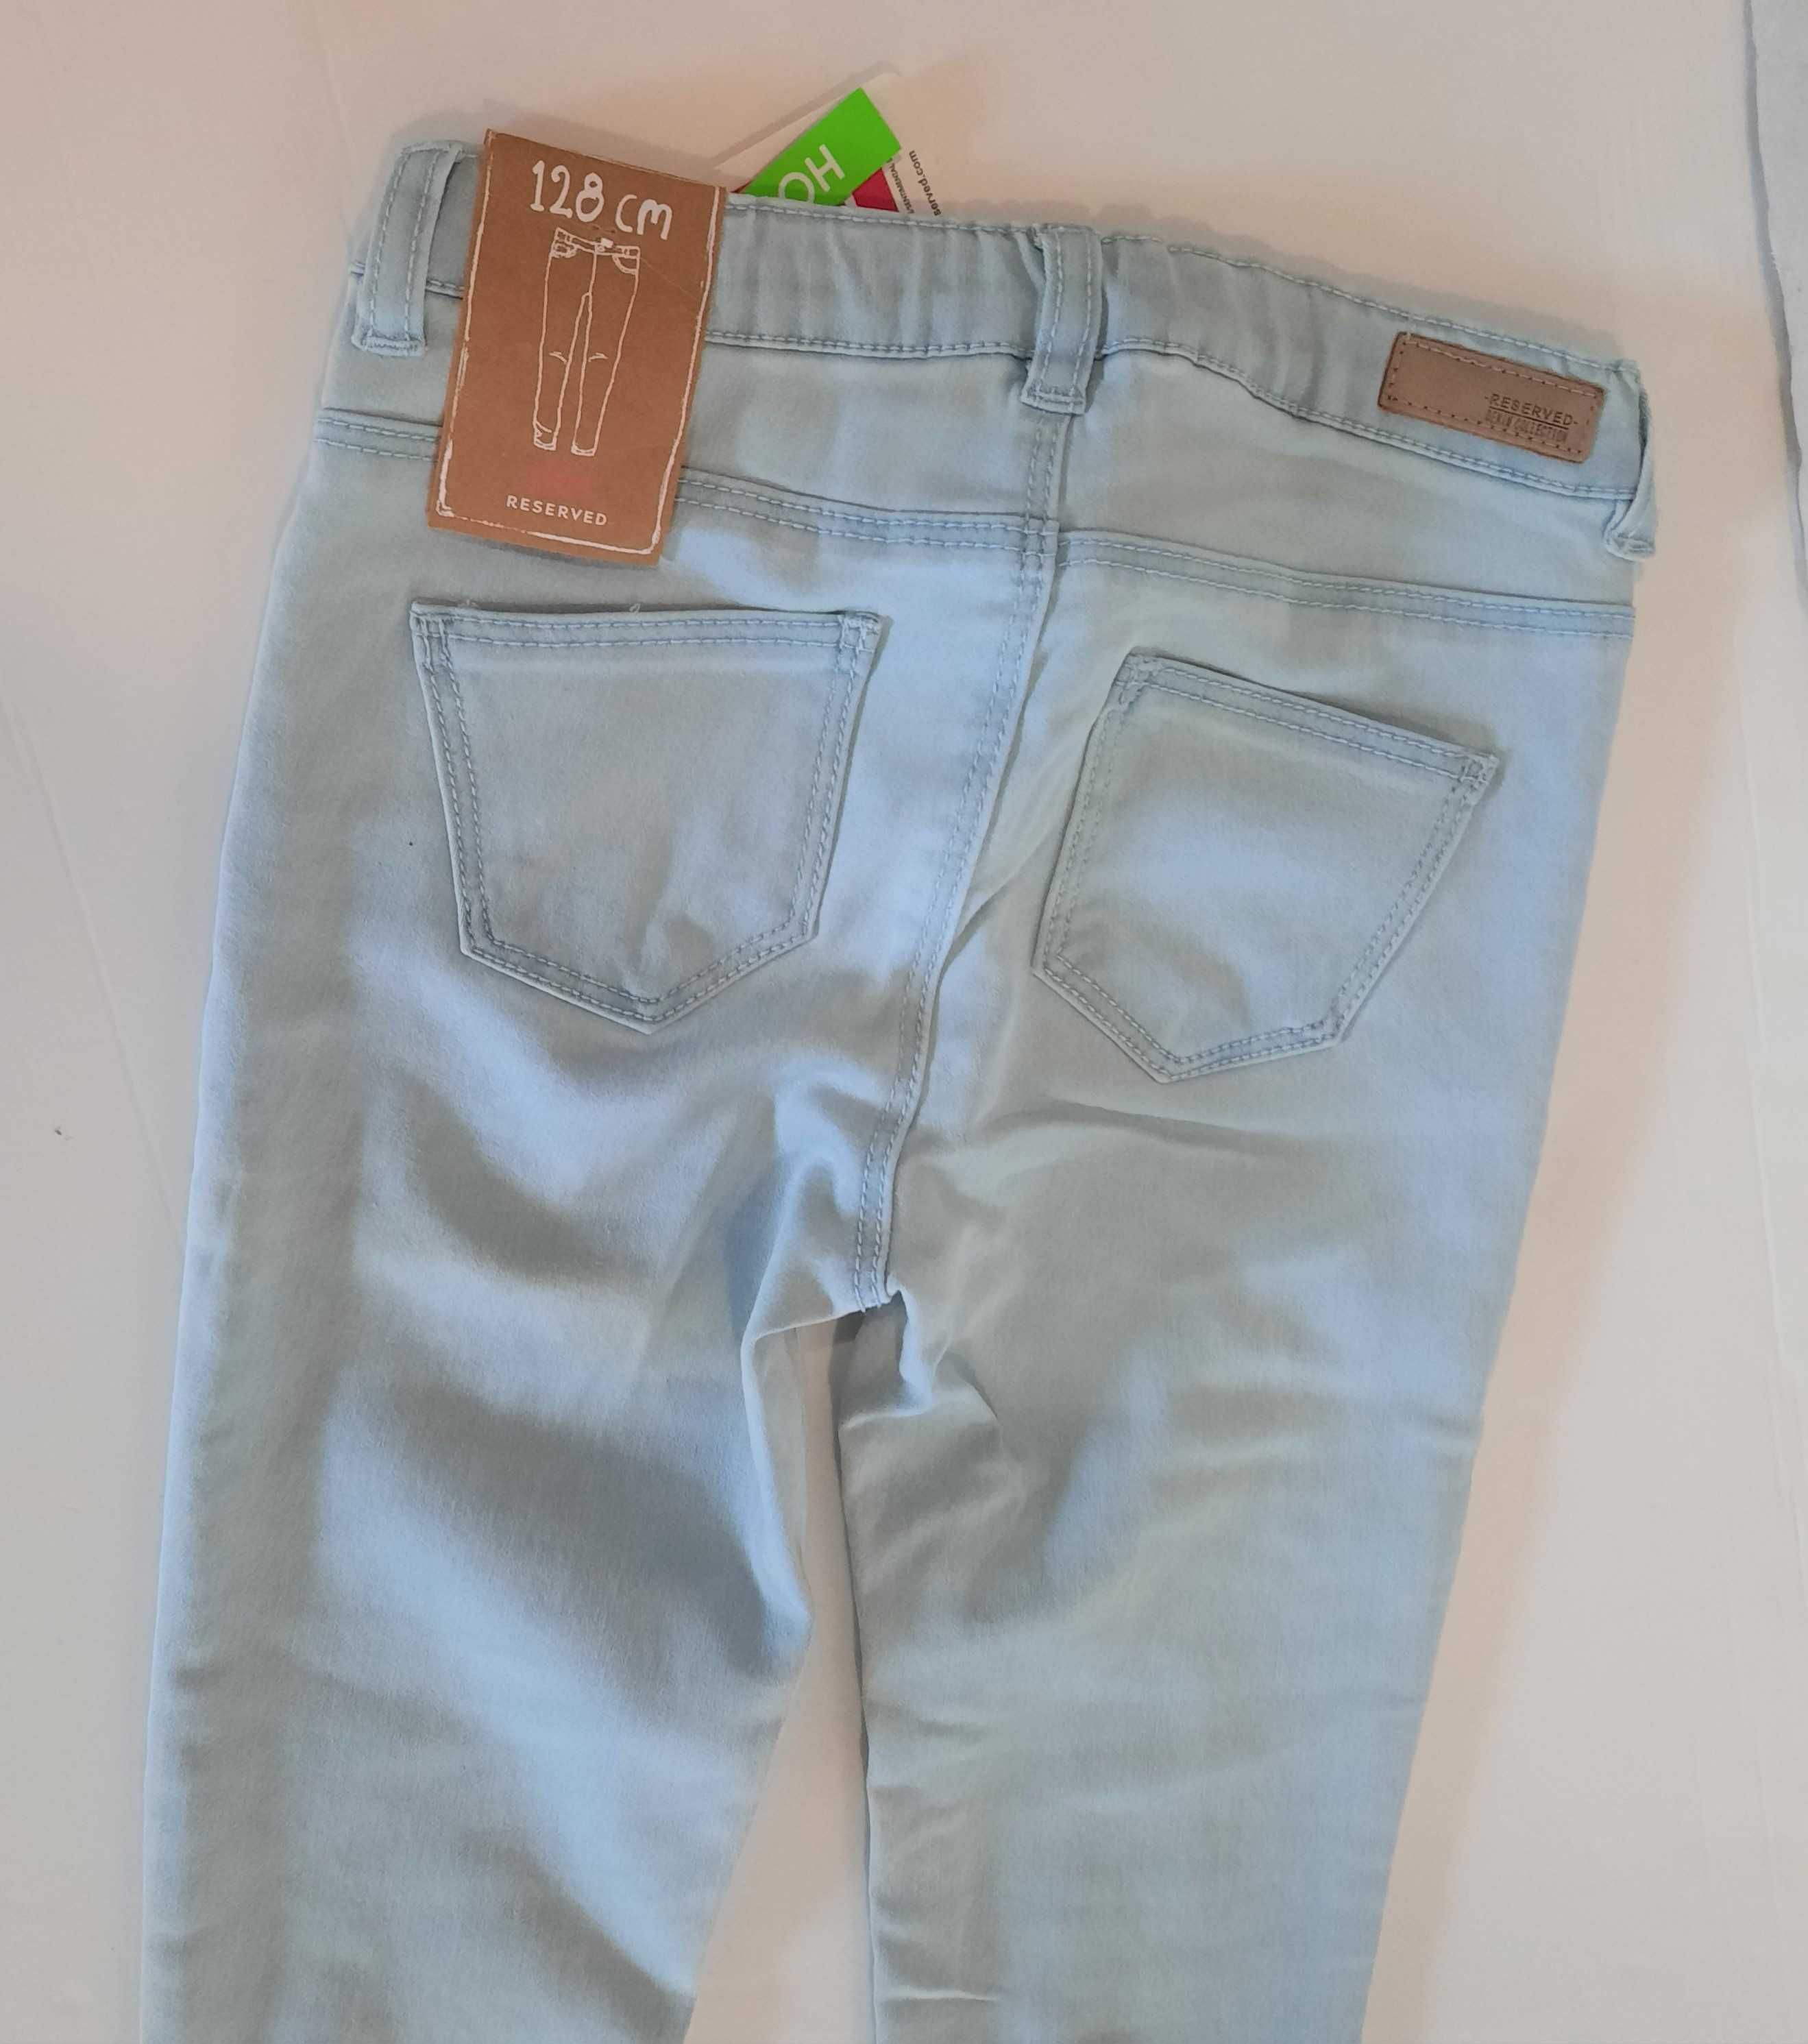 Spodnie skinny slim-fit rurki jeansowe jeans dzinsowe Reserved roz 128